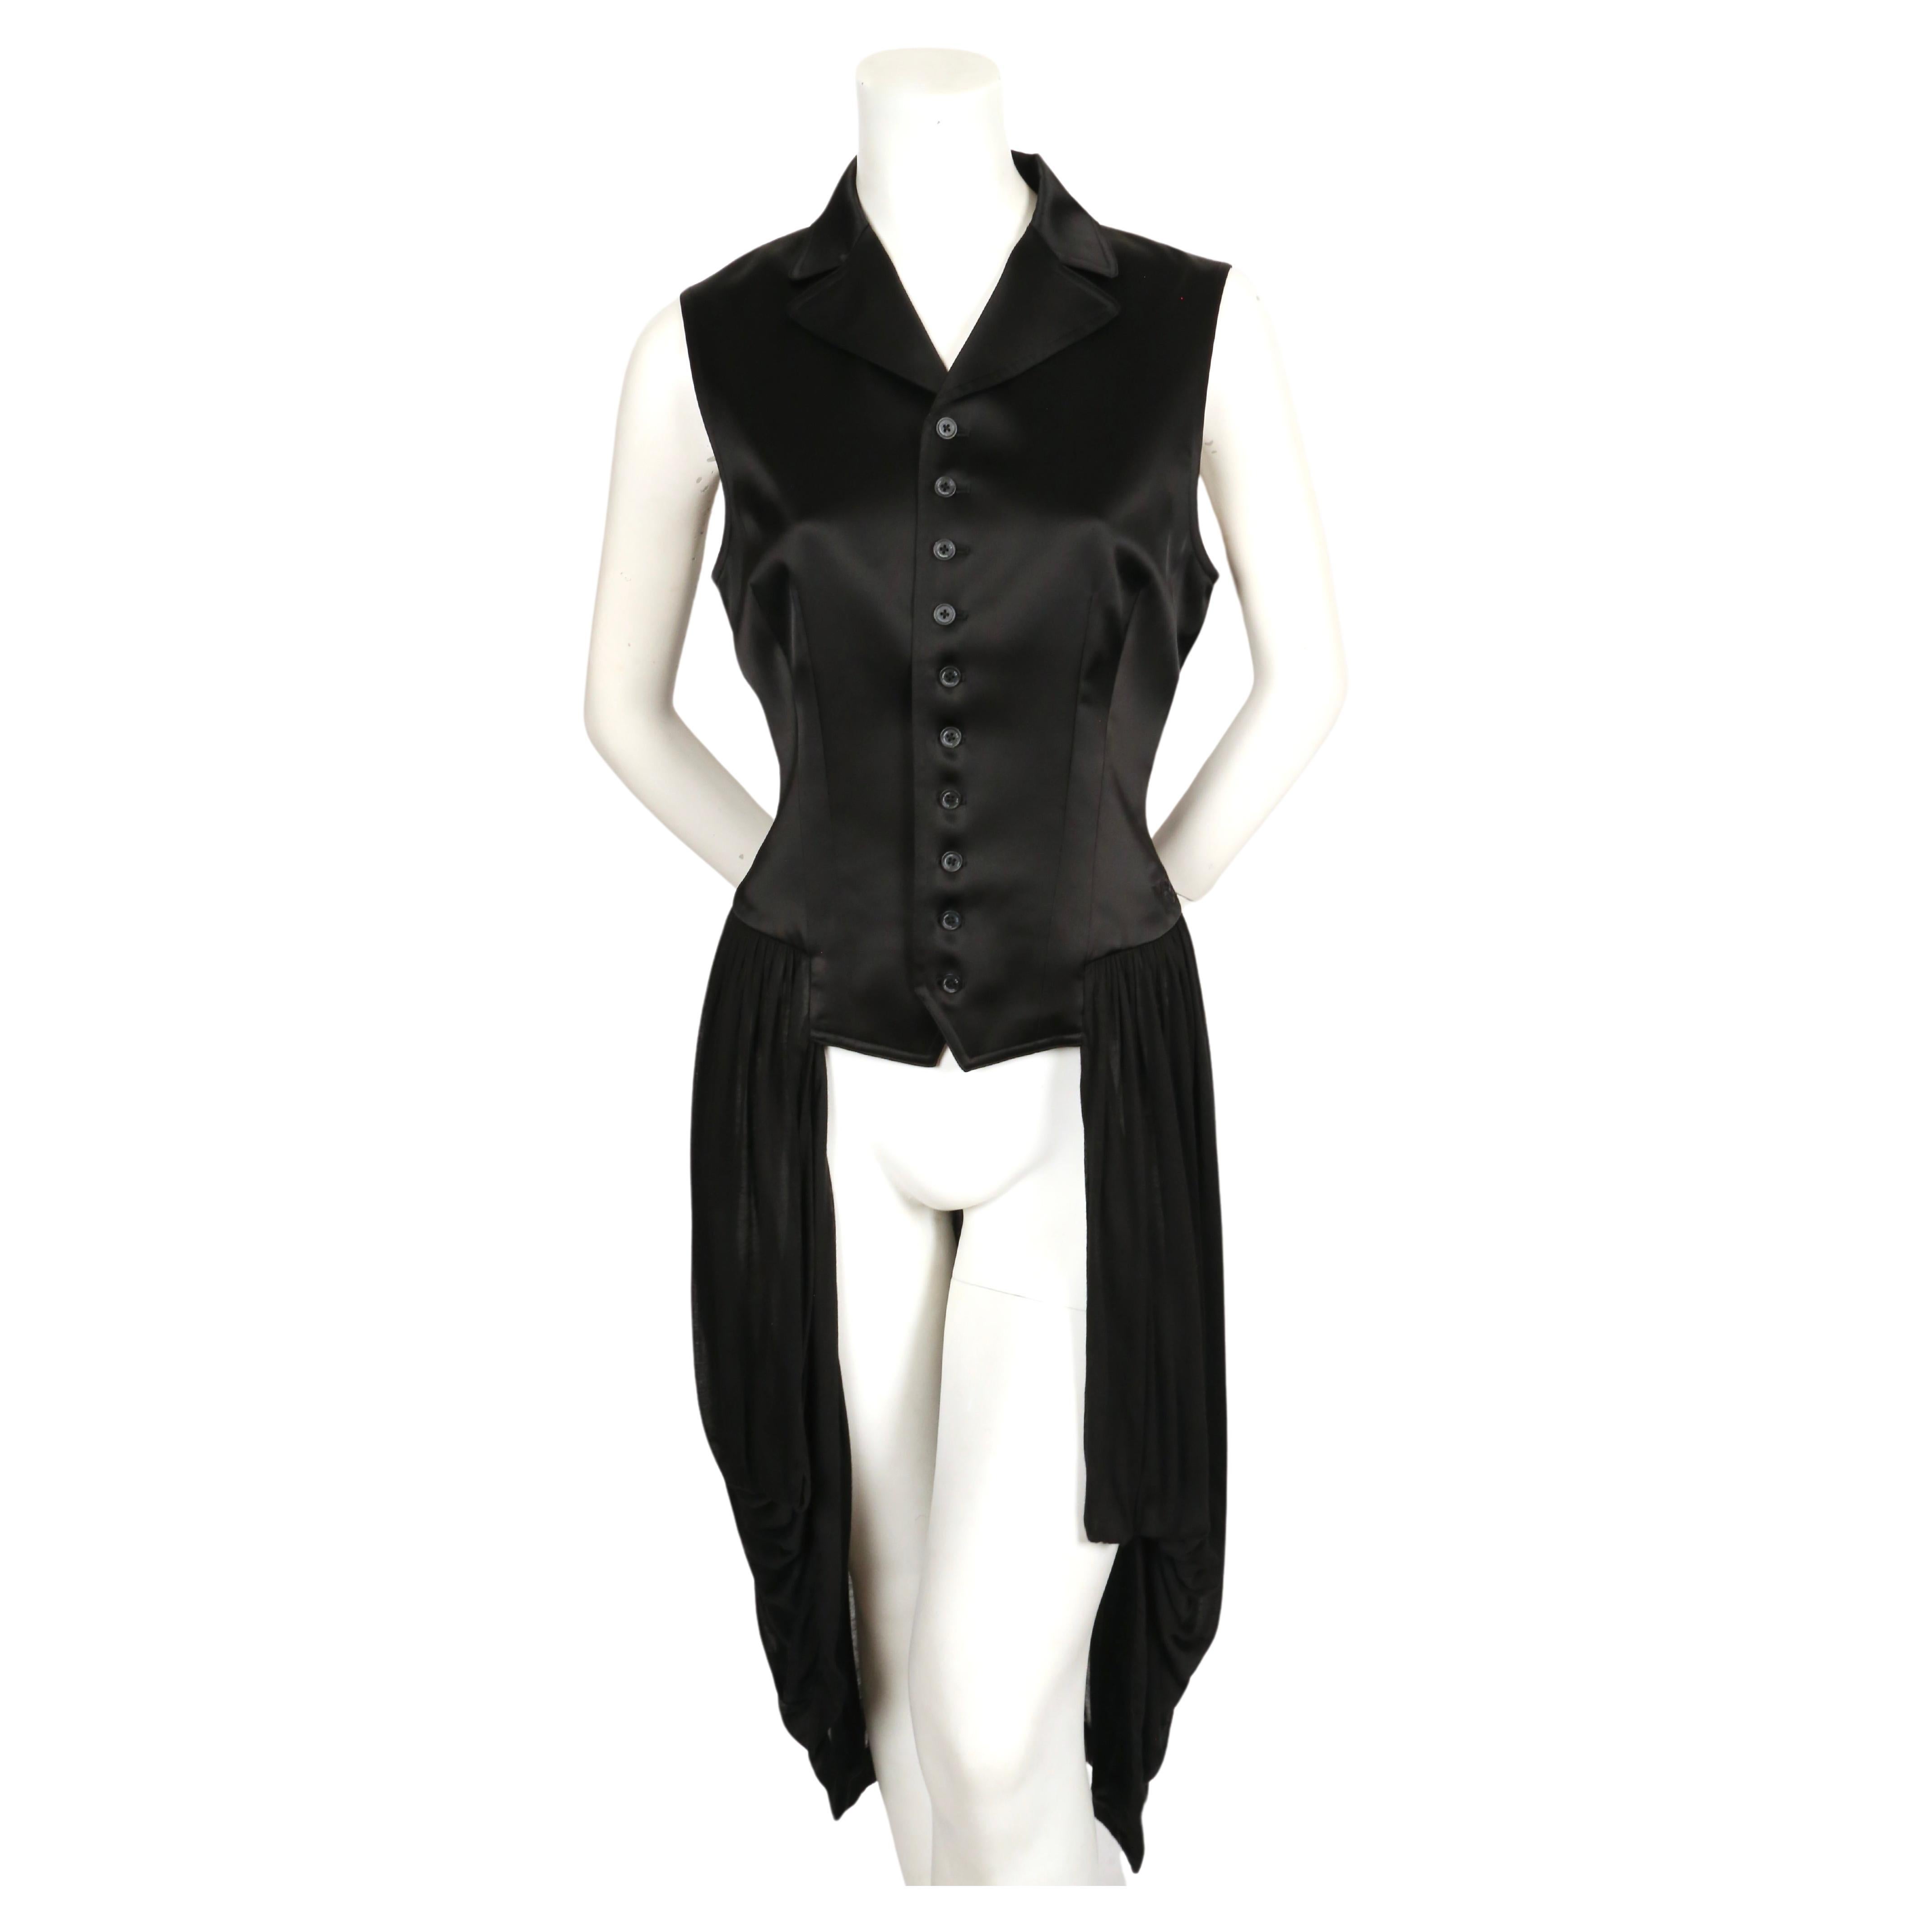 Robe boutonnée en satin noir de jais avec jupe transparente   conçu par Yohji Yamamoto pour Y-3. Taille M.  Mesures approximatives : épaule 15